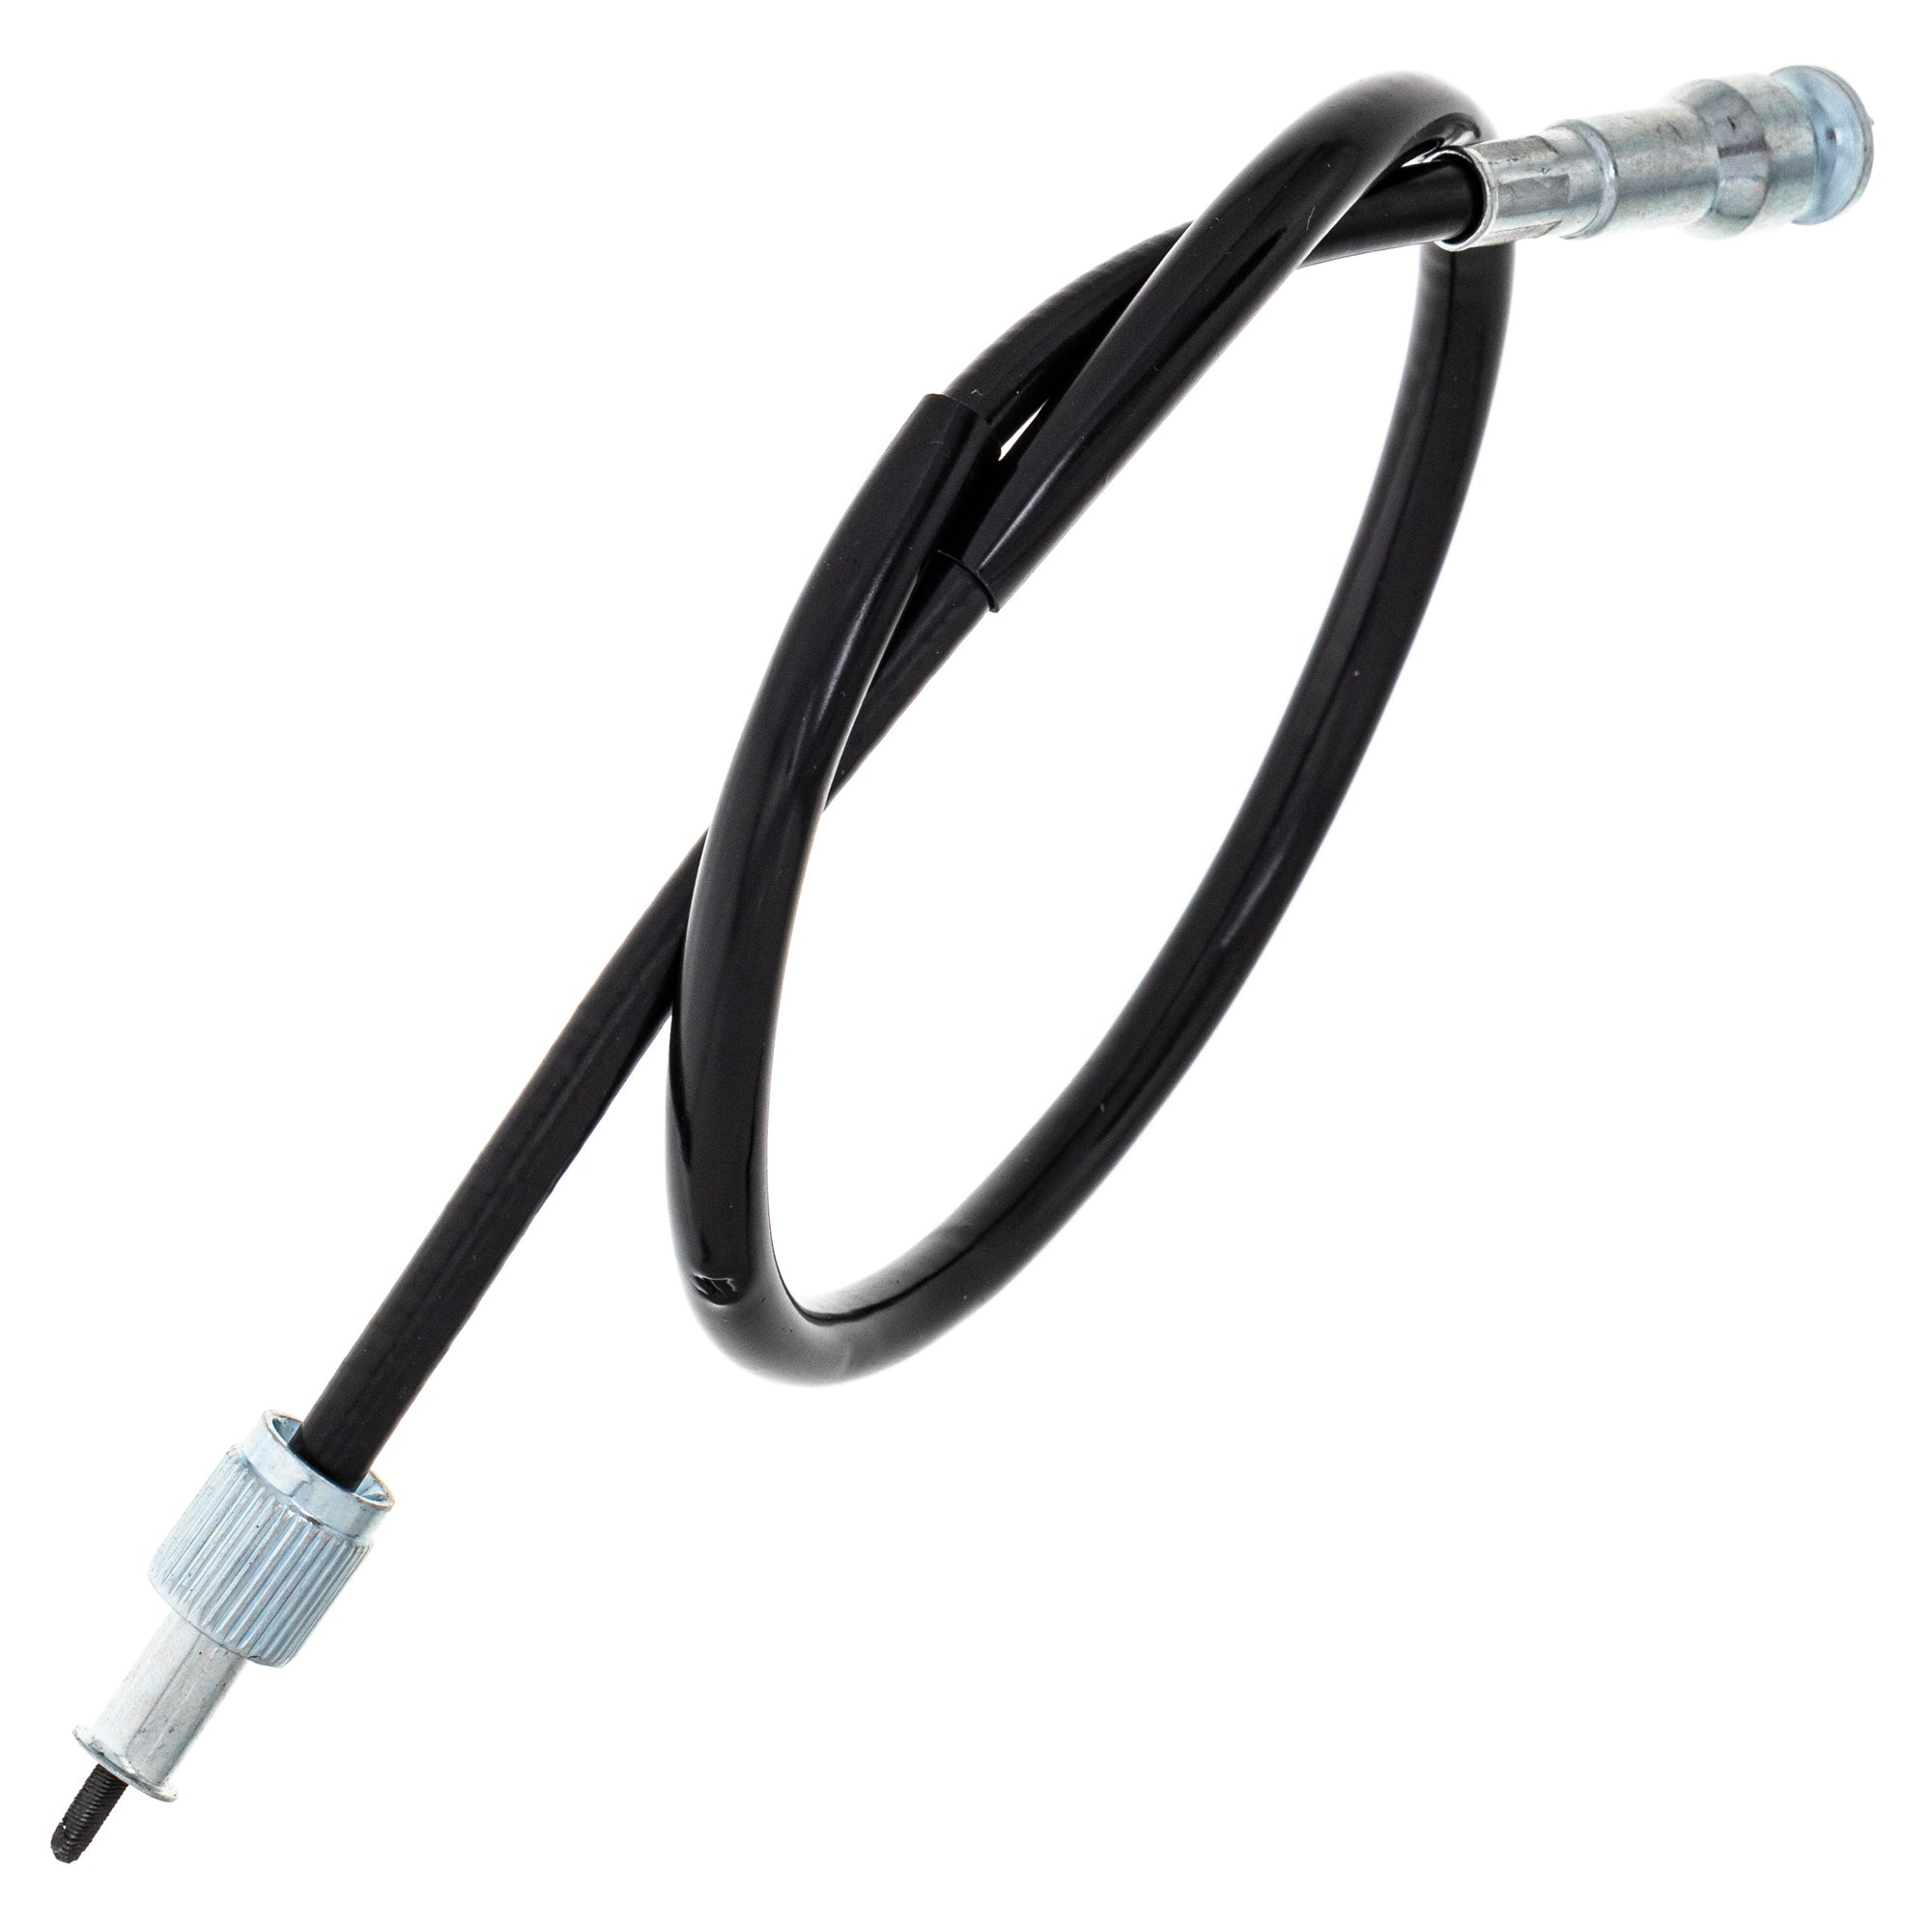 Tachometer Cable For Honda 37260-MA5-670 37260-MA1-730 37260-MA1-000 37260-KB7-010 37260-461-000